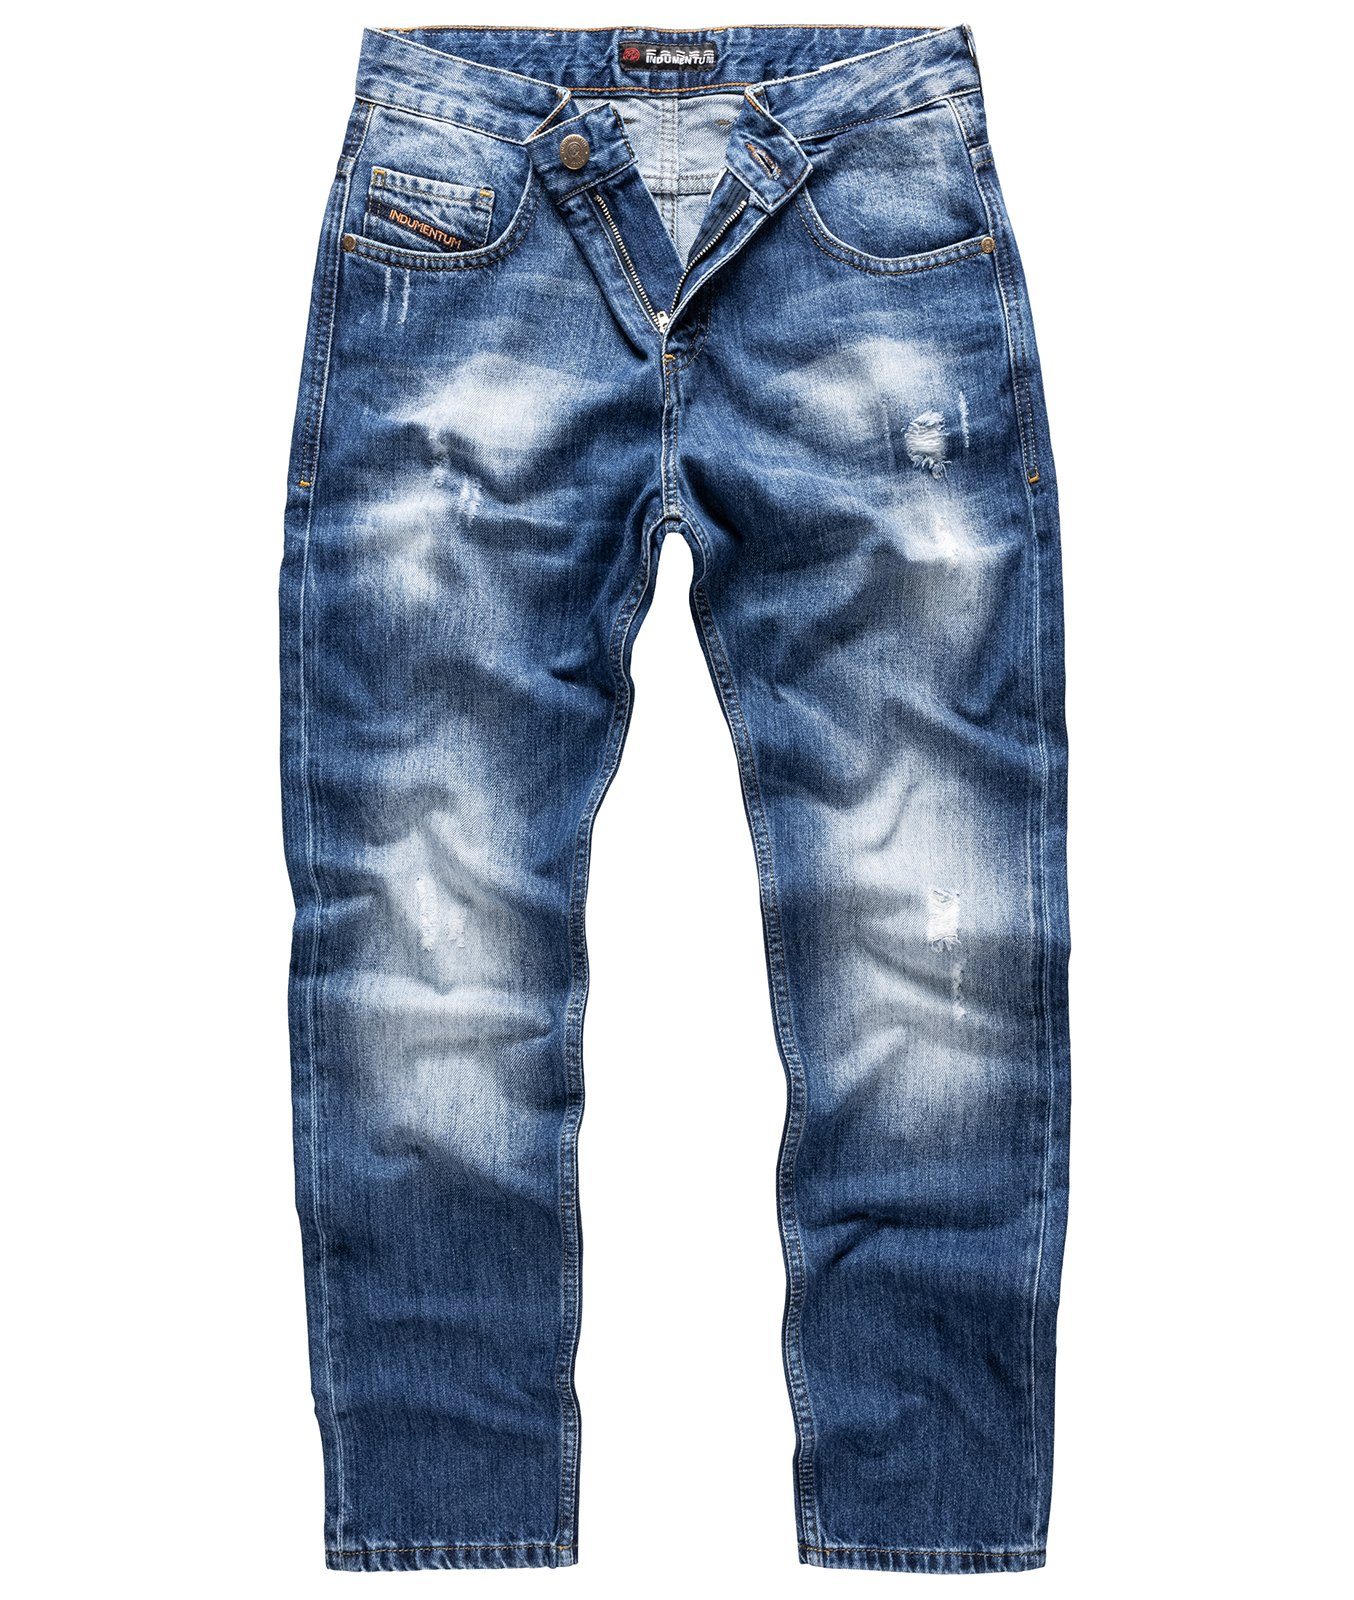 Indumentum Regular-fit-Jeans Herren IR-501 Stonewashed Jeans Blau